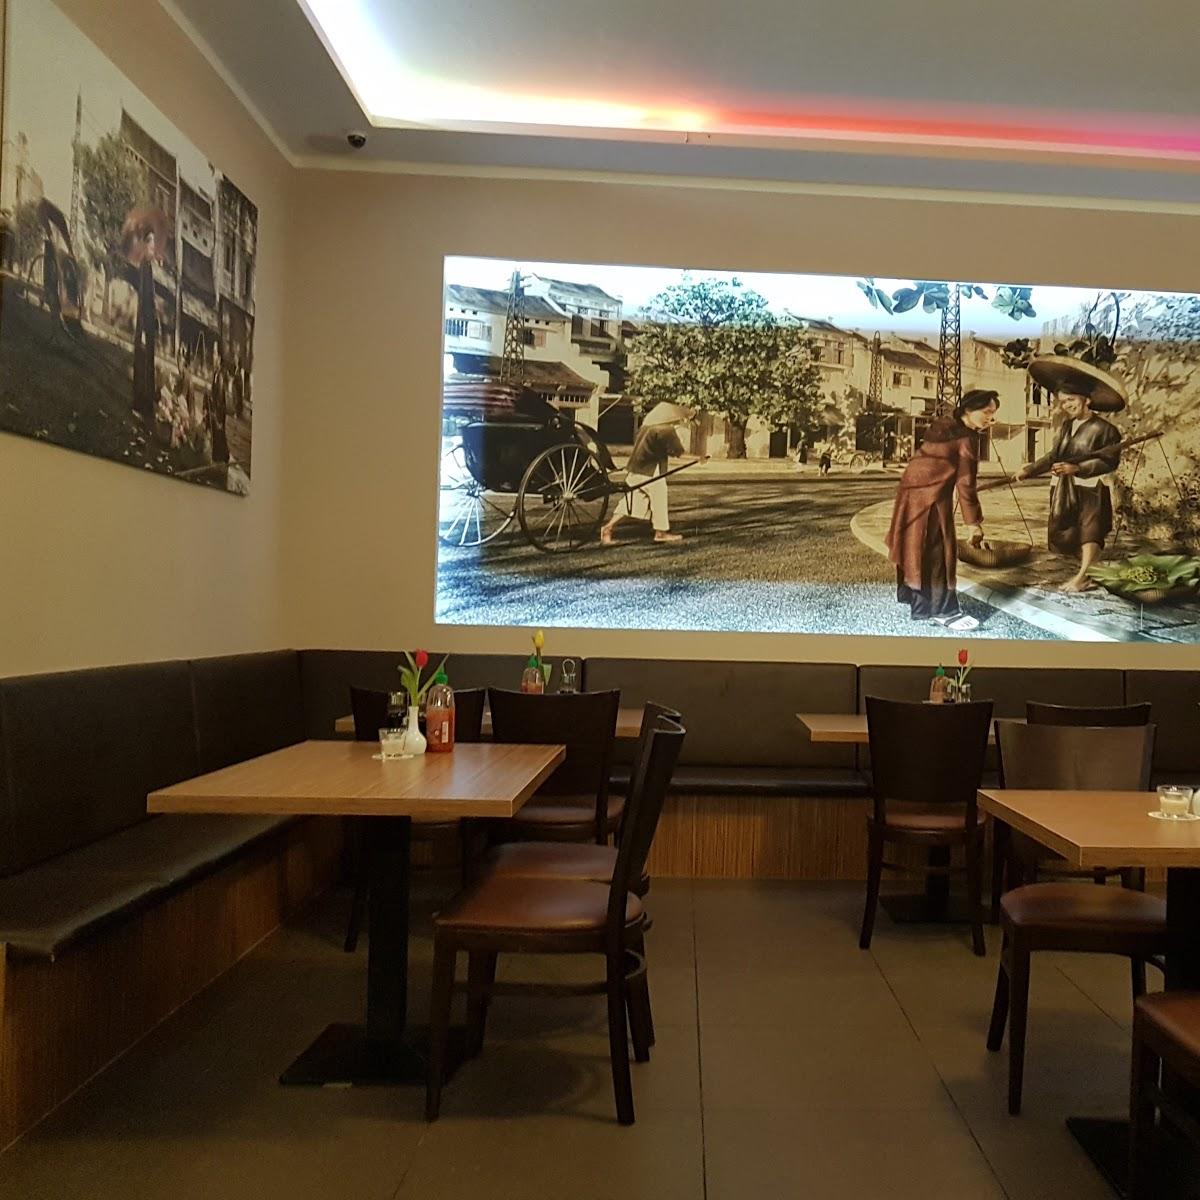 Restaurant "Thai Son" in Berlin